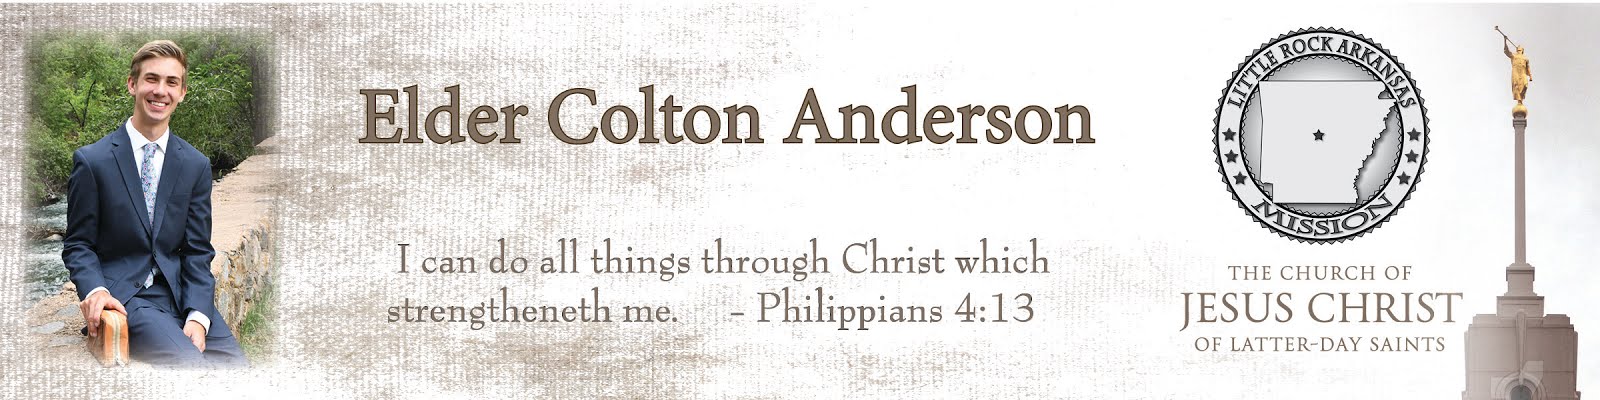 Elder Colton Anderson